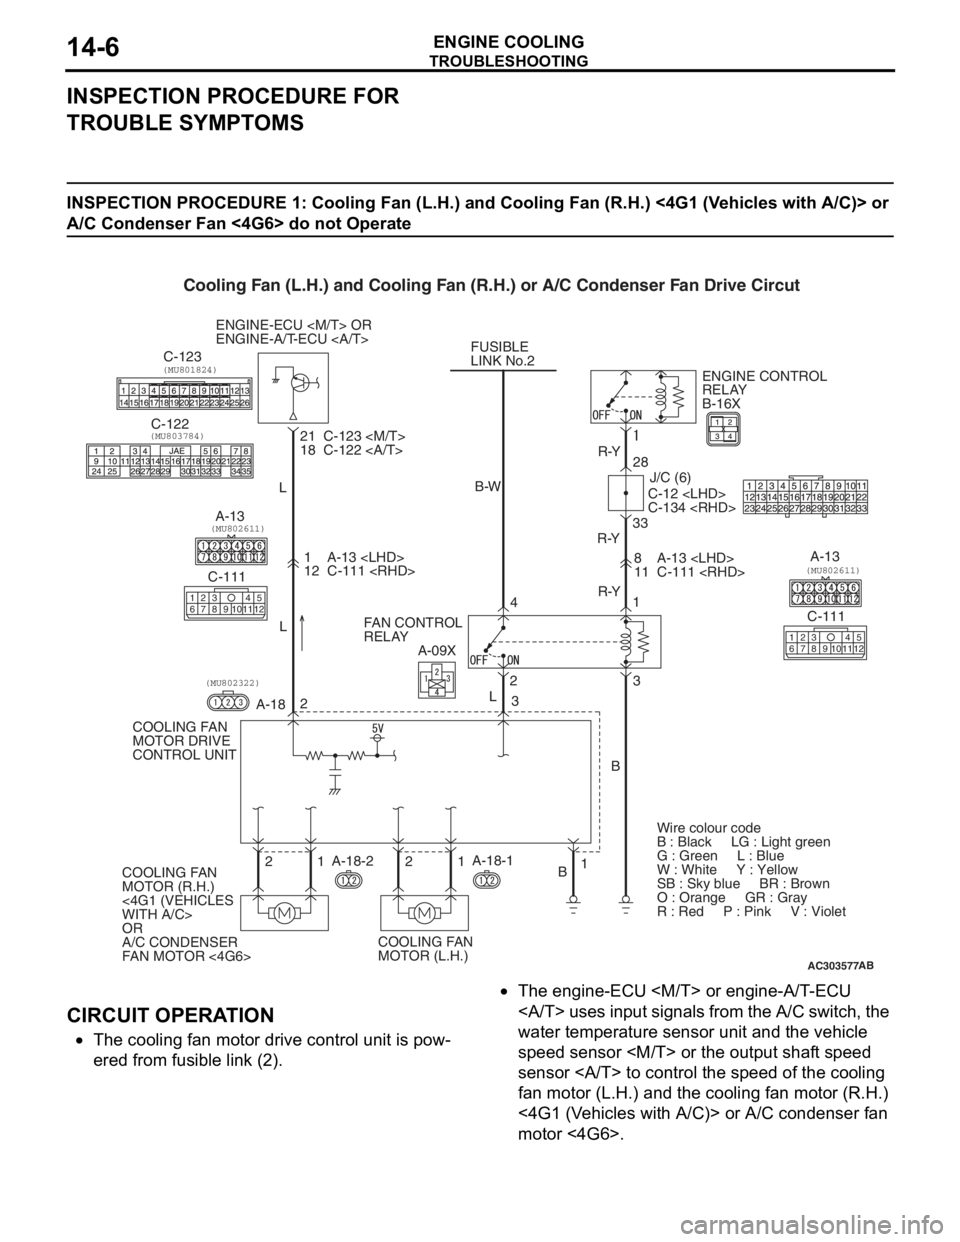 MITSUBISHI LANCER 2006  Workshop Manual 
TROUBLESHOOTING
ENGINE COOLING14-6
INSPECTION PROCEDURE FOR 
TROUBLE SYMPTOMS
INSPECTION PROCEDURE 1: Cooling Fan (L.H.) and Cooling Fan (R.H.) <4G1 (Vehicles with A/C)> or 
A/C Condenser Fan <4G6> d